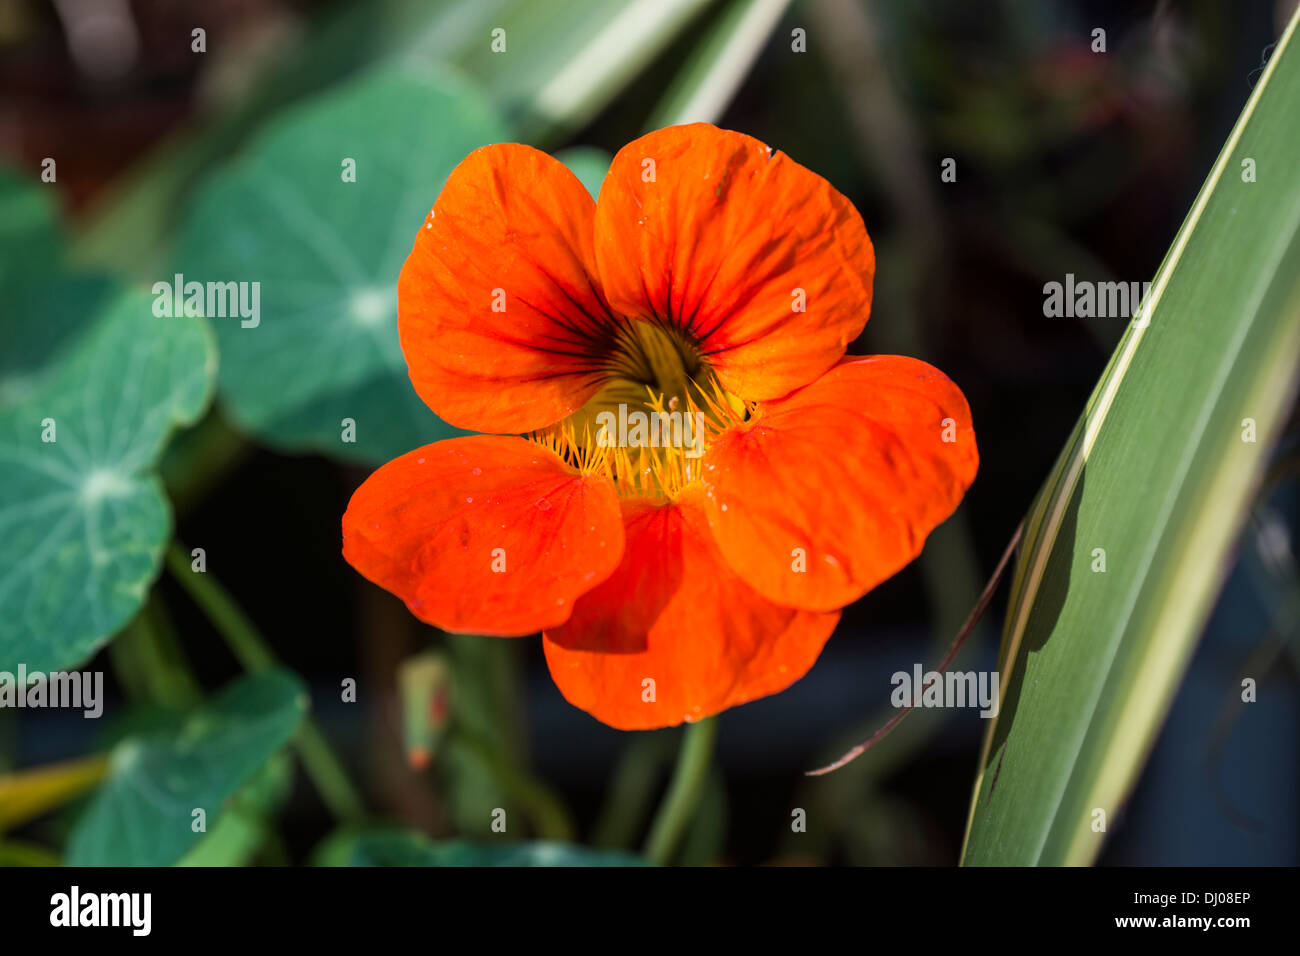 amber orange flower leaves Stock Photo